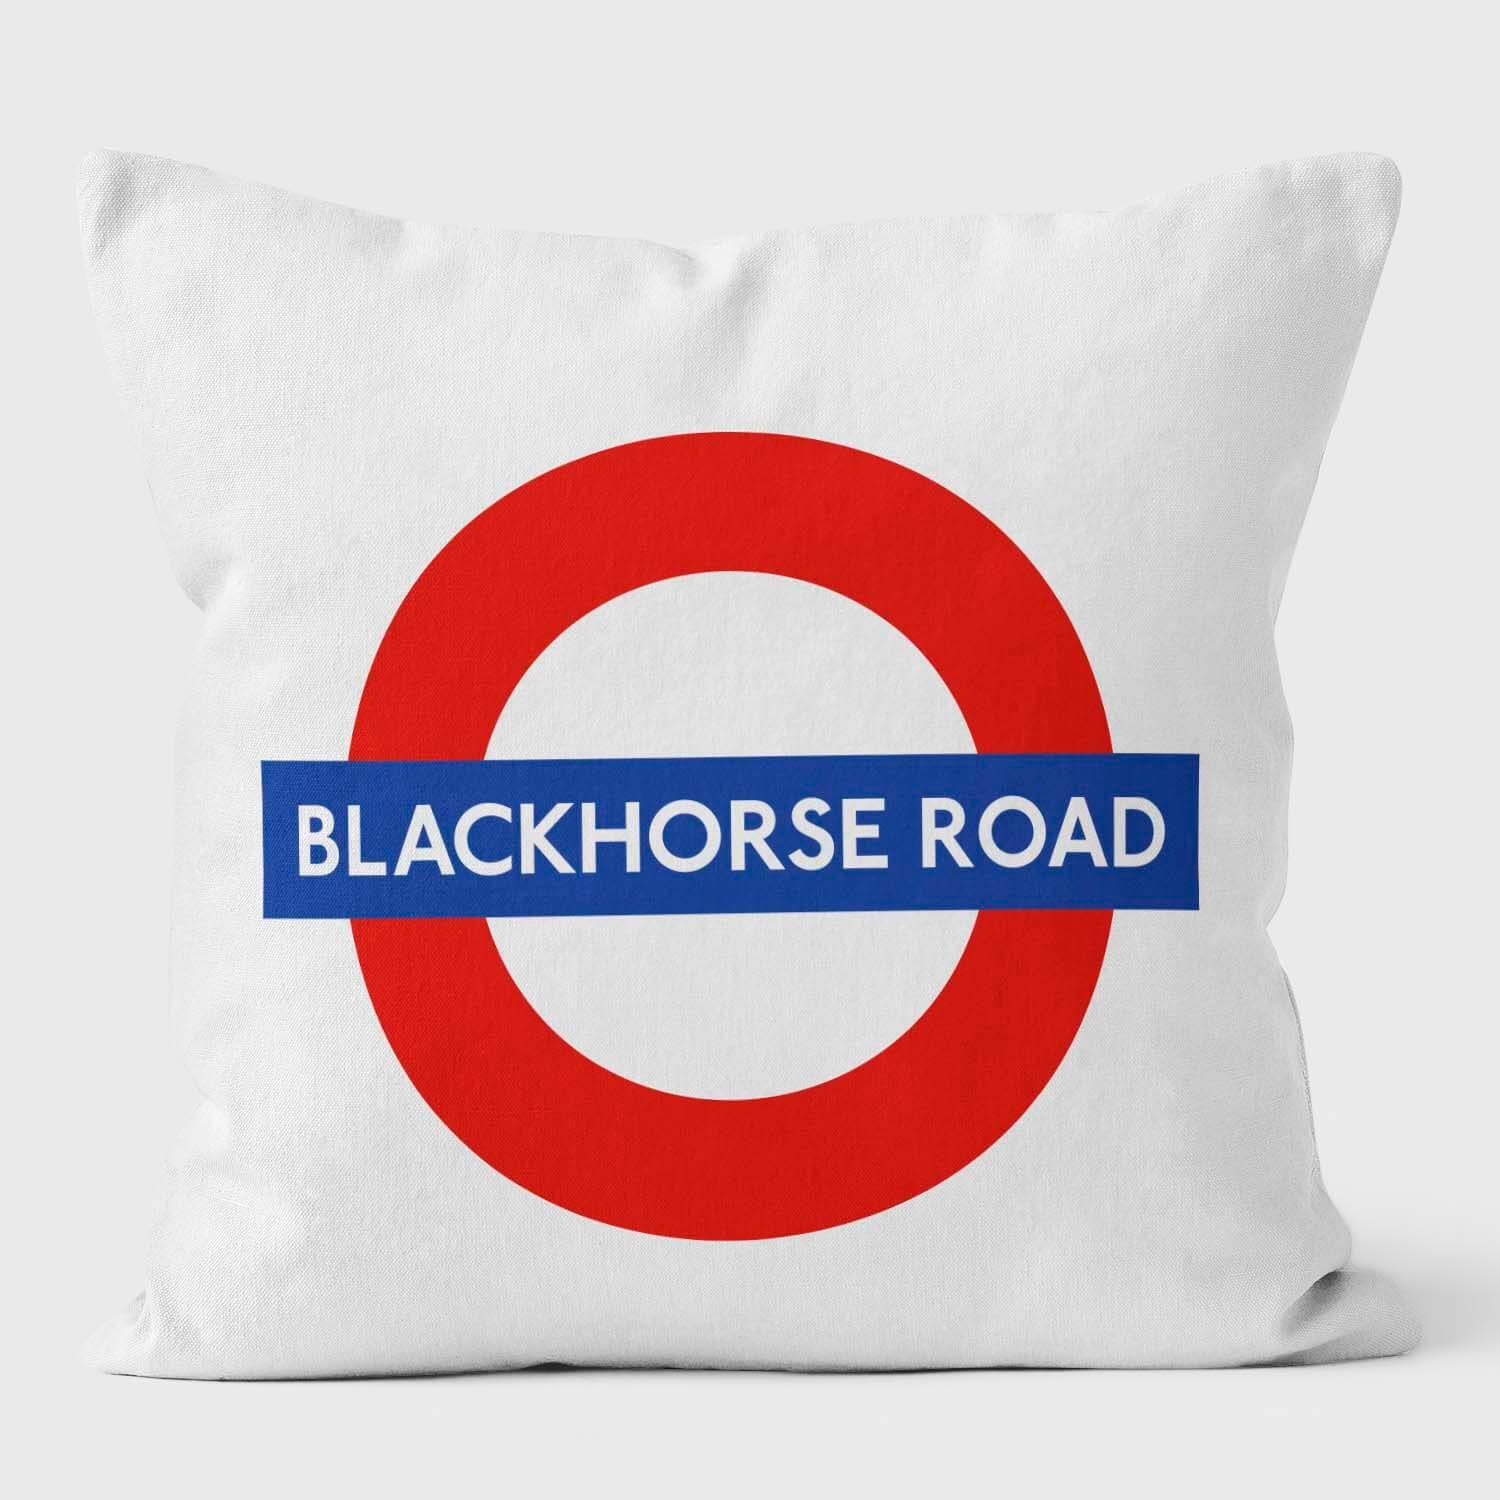 Blackhorse Road London Underground Tube Station Roundel Cushion - Handmade Cushions UK - WeLoveCushions